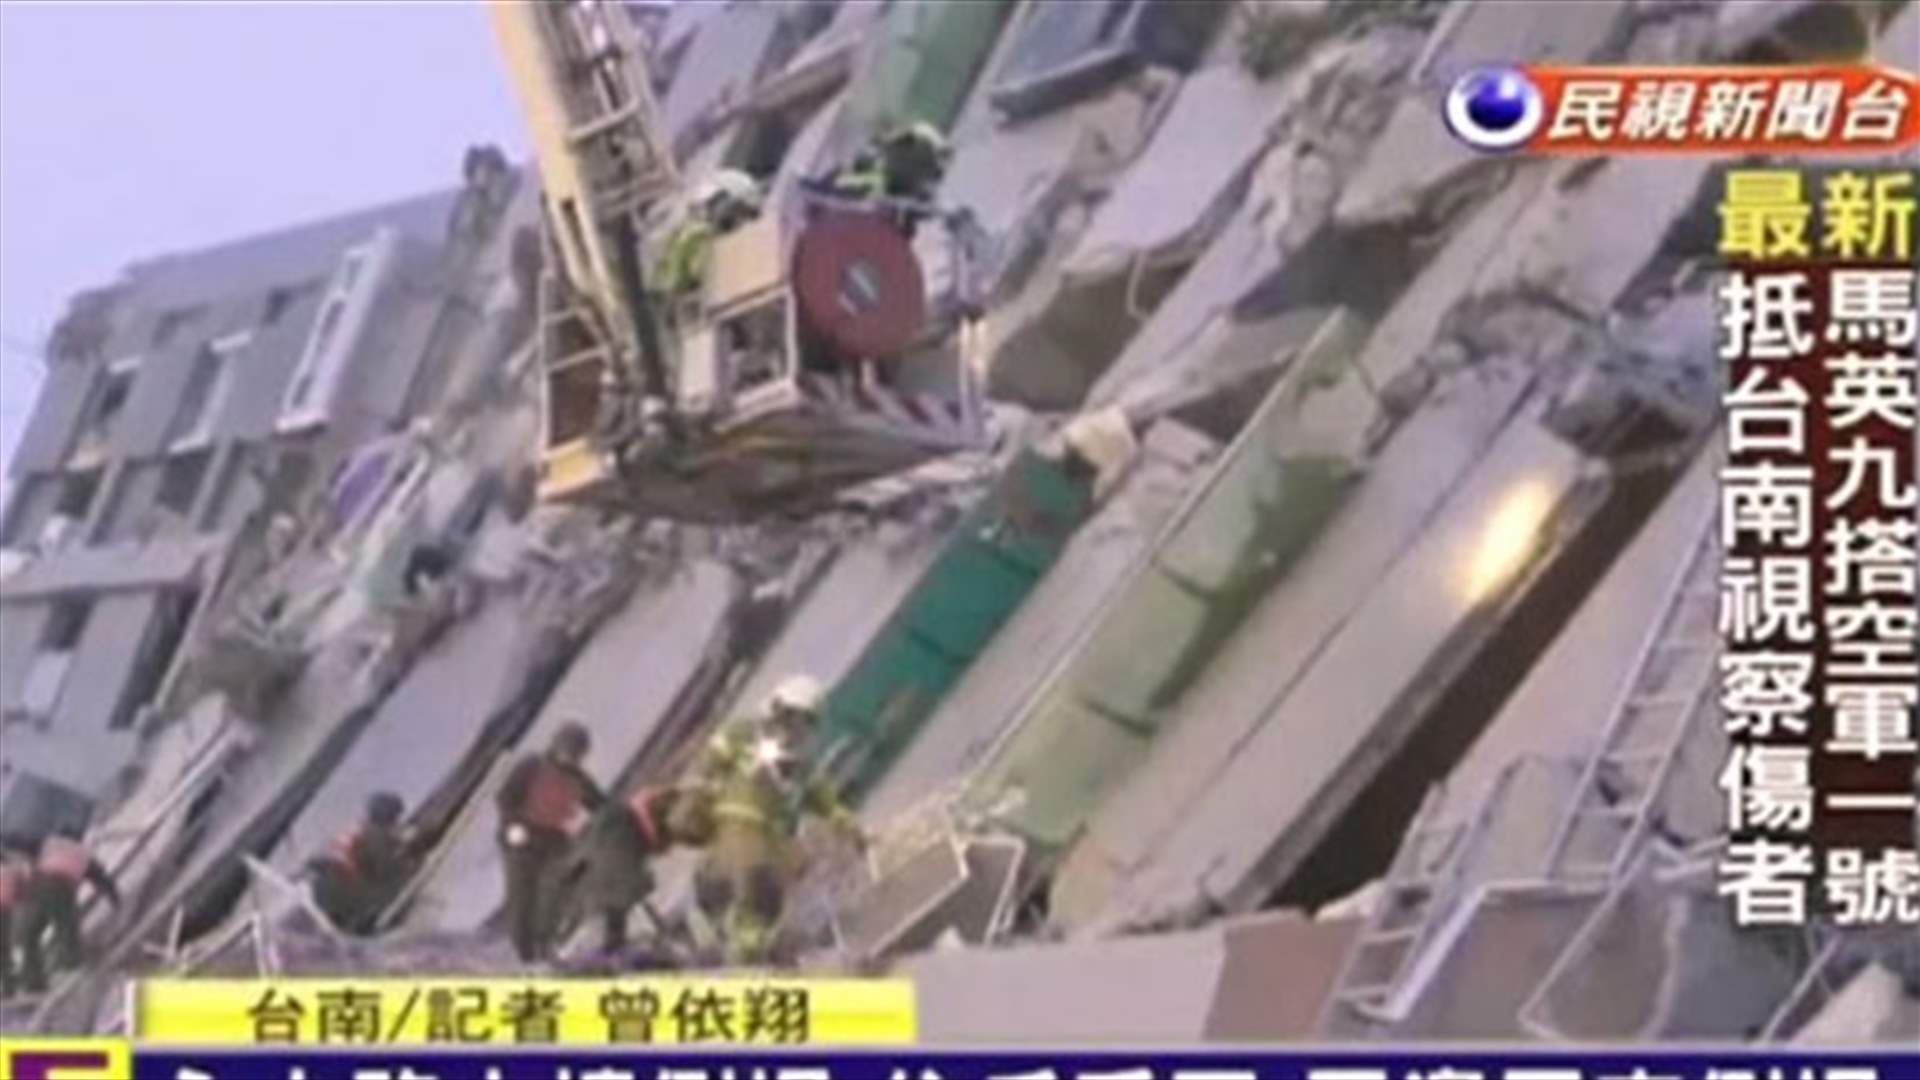  مئة شخص لا يزالون تحت الانقاض اثر زلزال تايوان